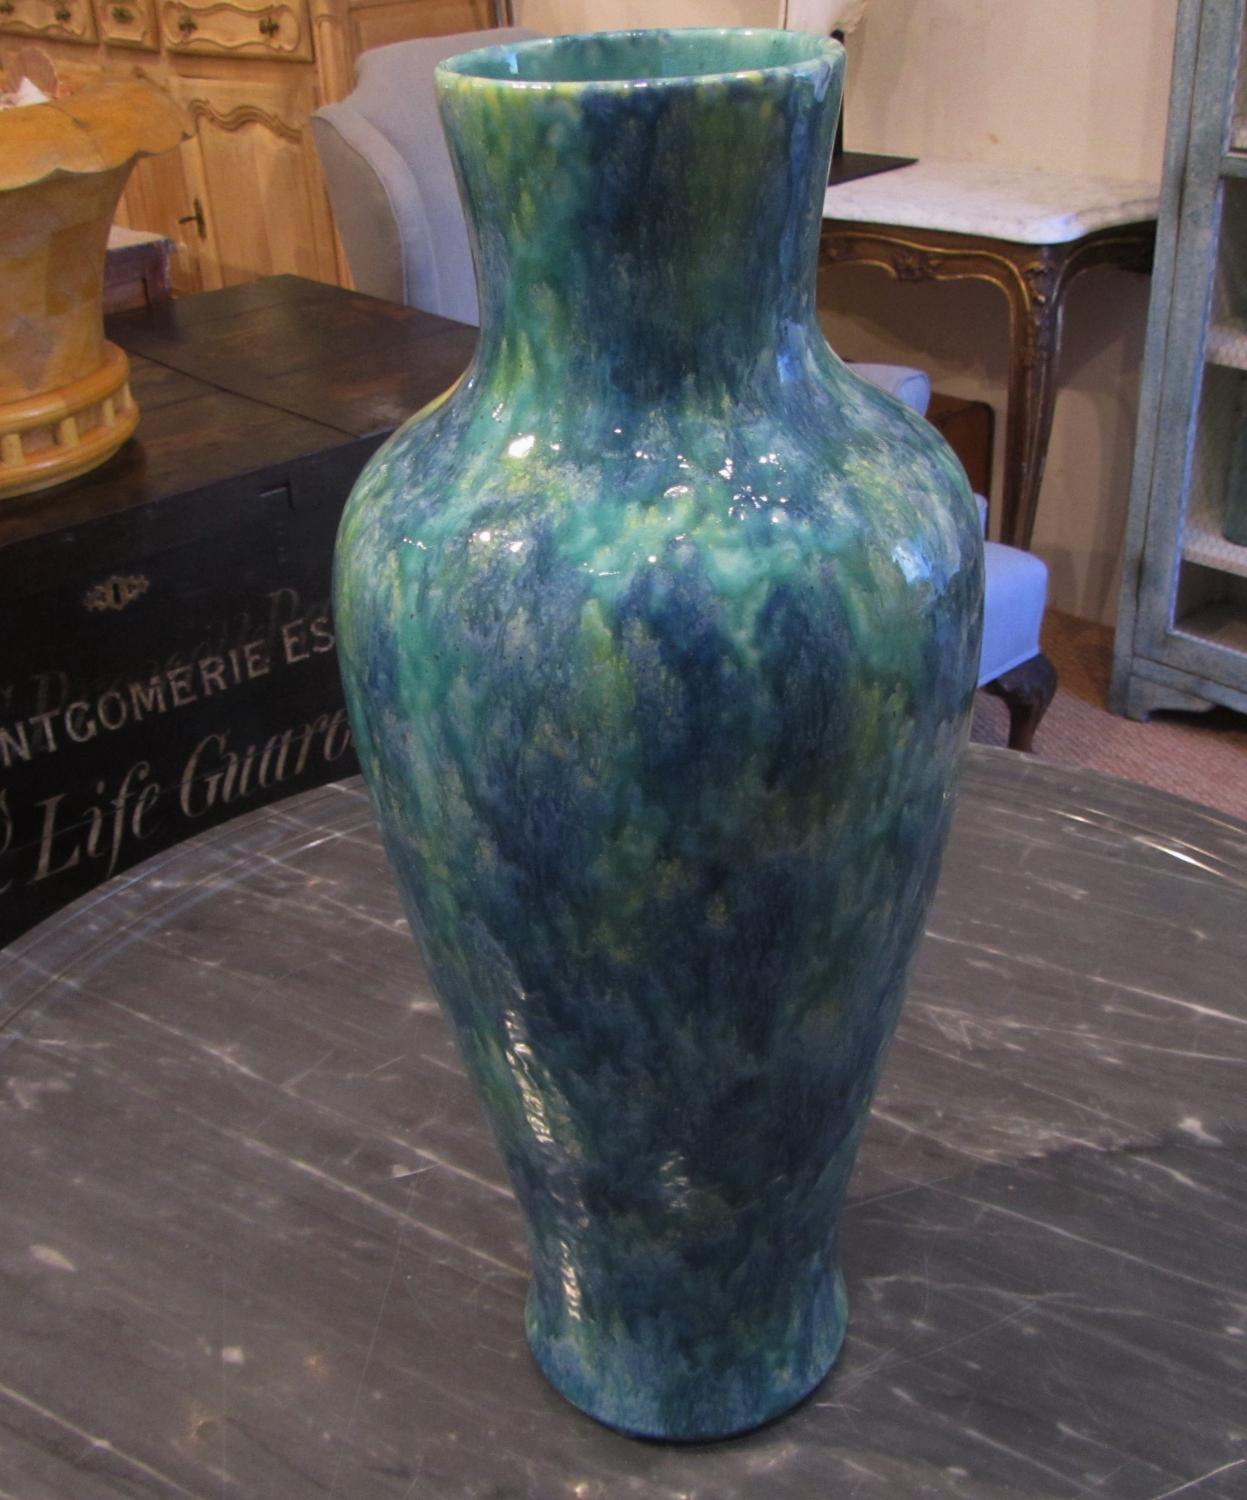 A large pottery vase